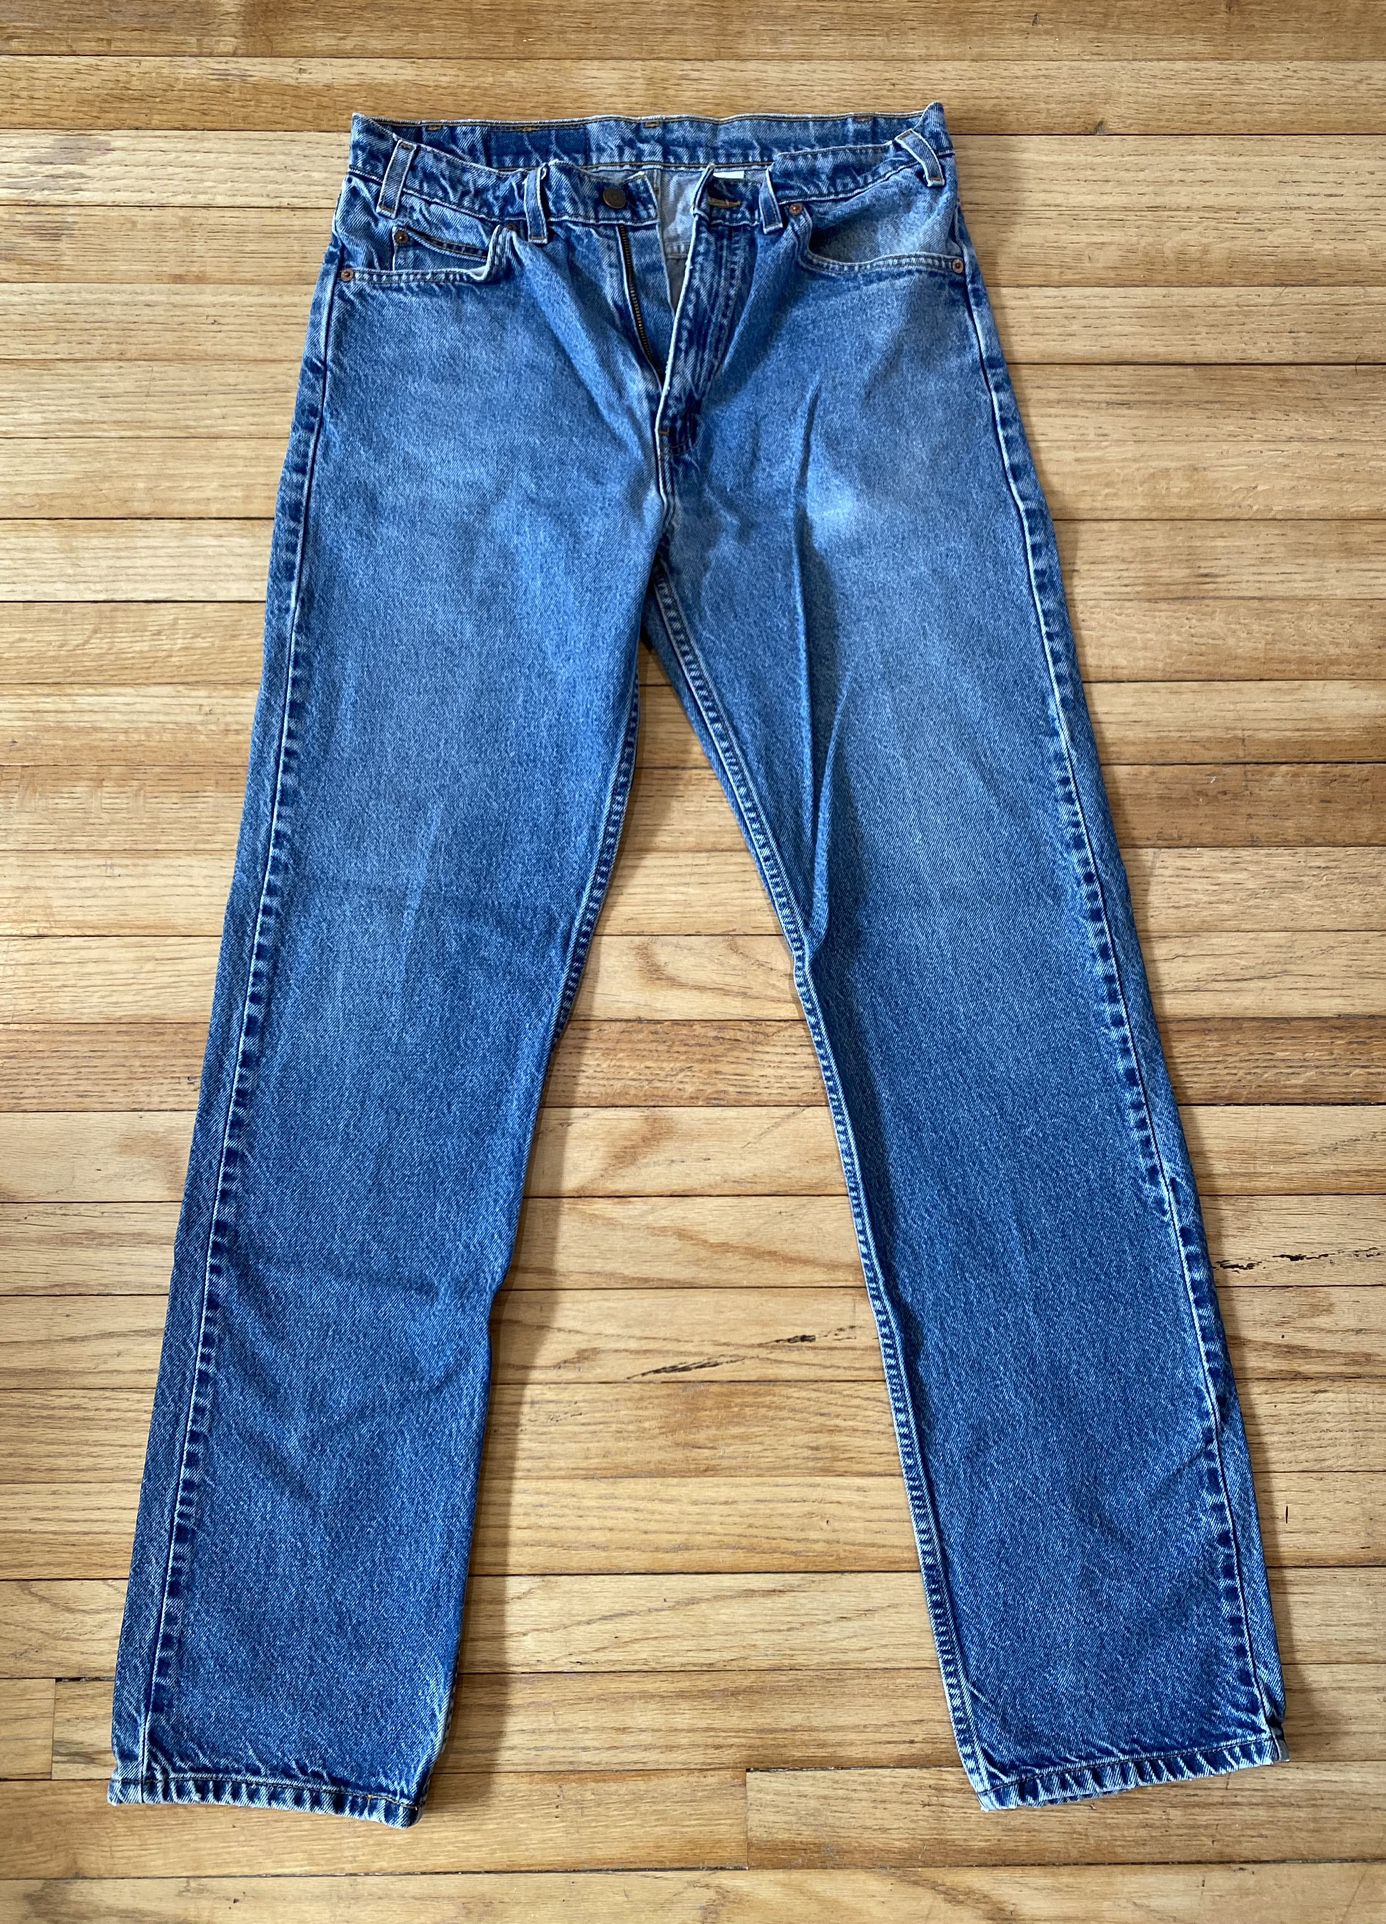 Men’s Levi’s 505 Jeans 1997